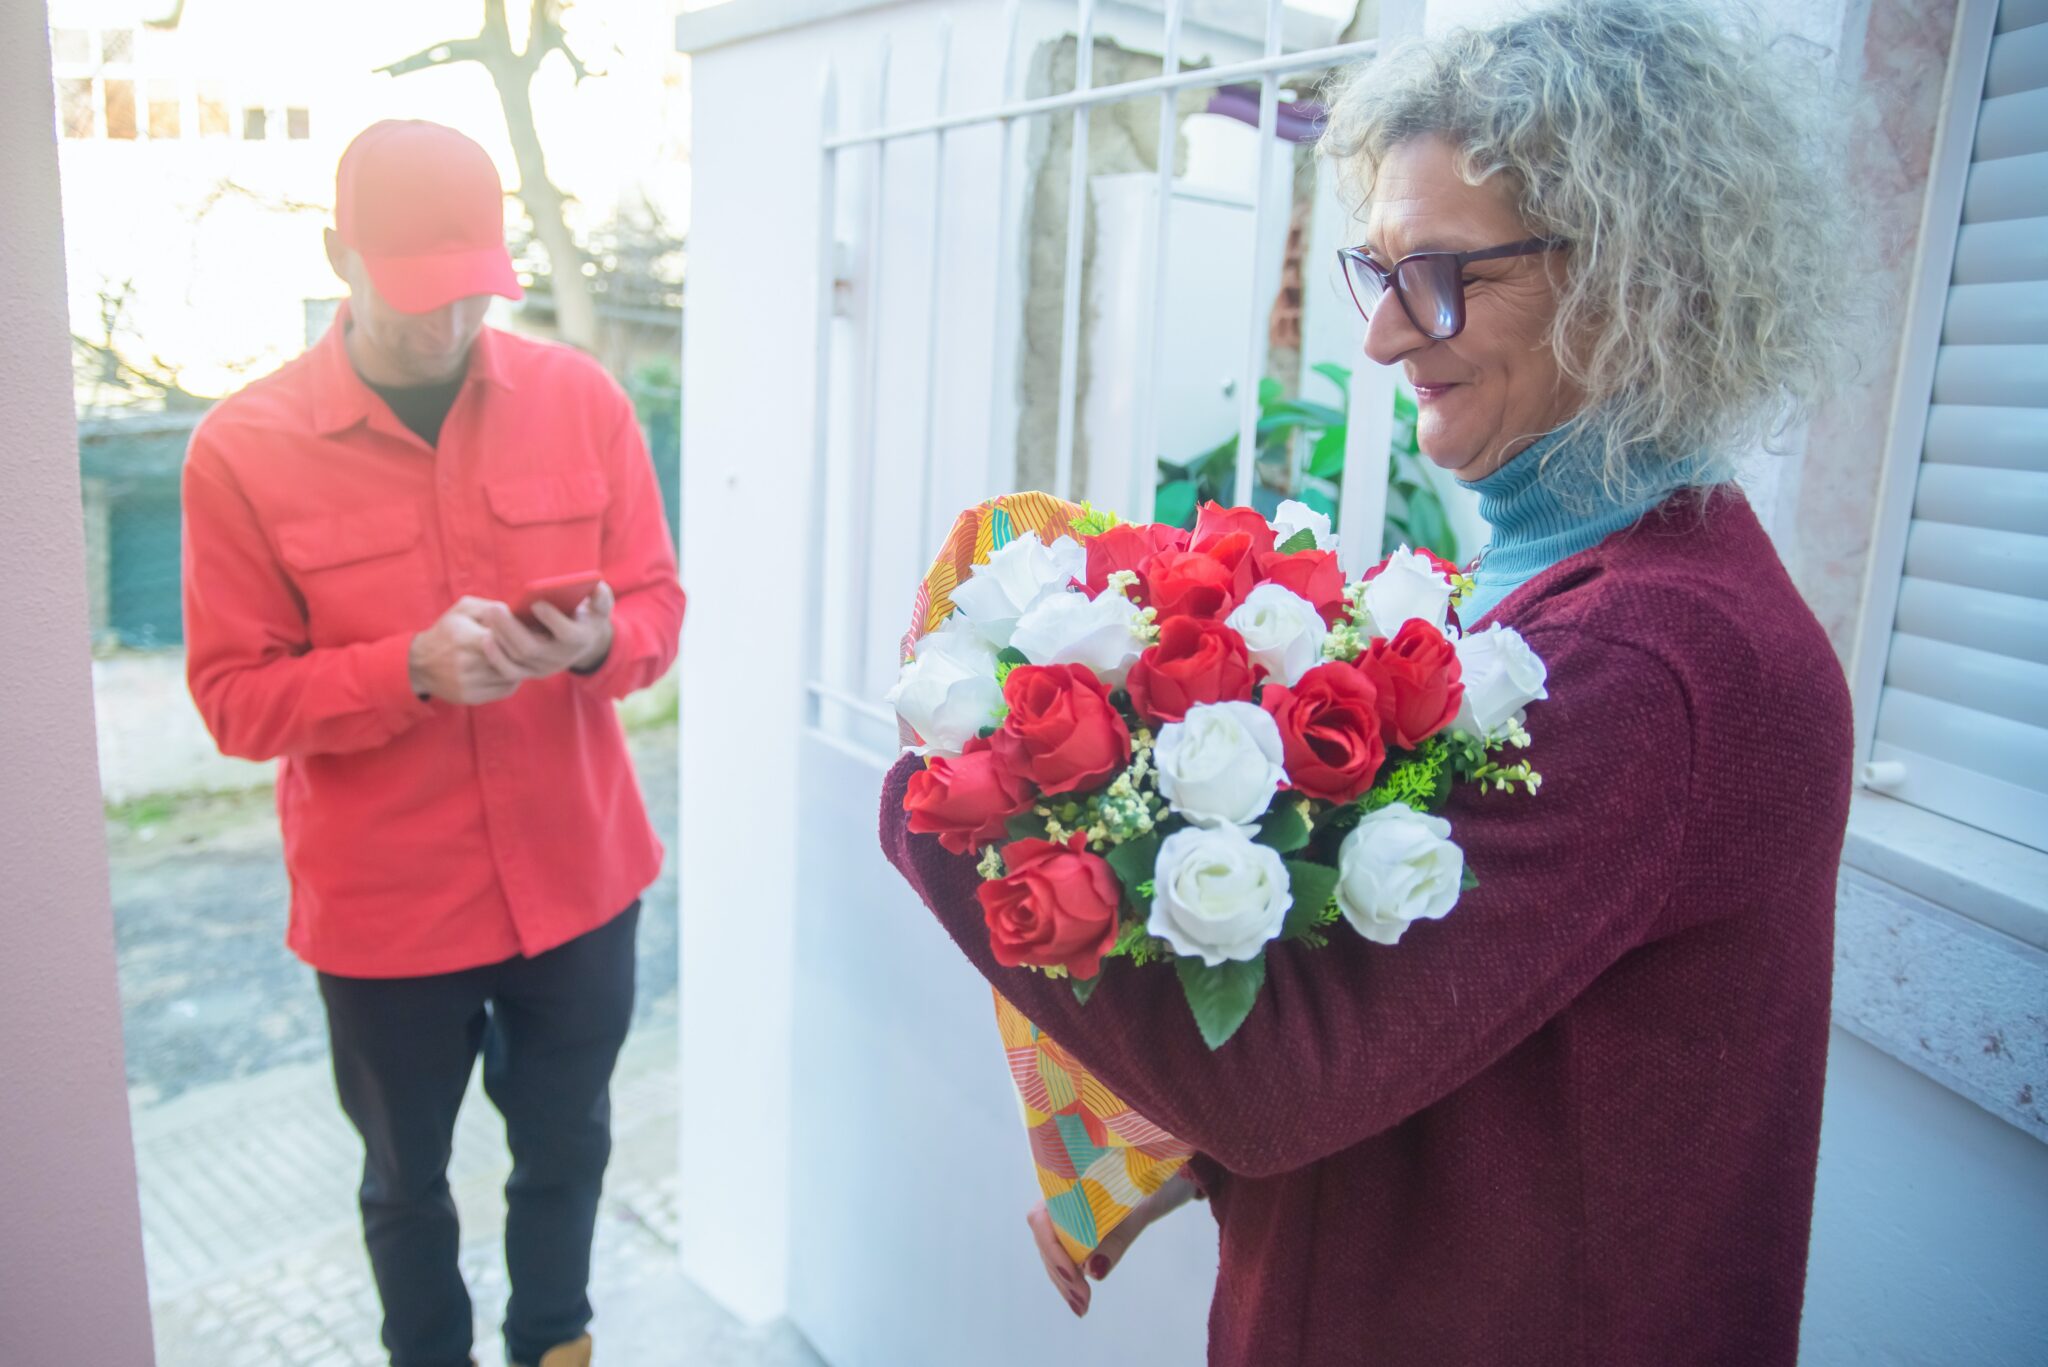 Versende Blumen oder Geschenke an Freunde und Familie